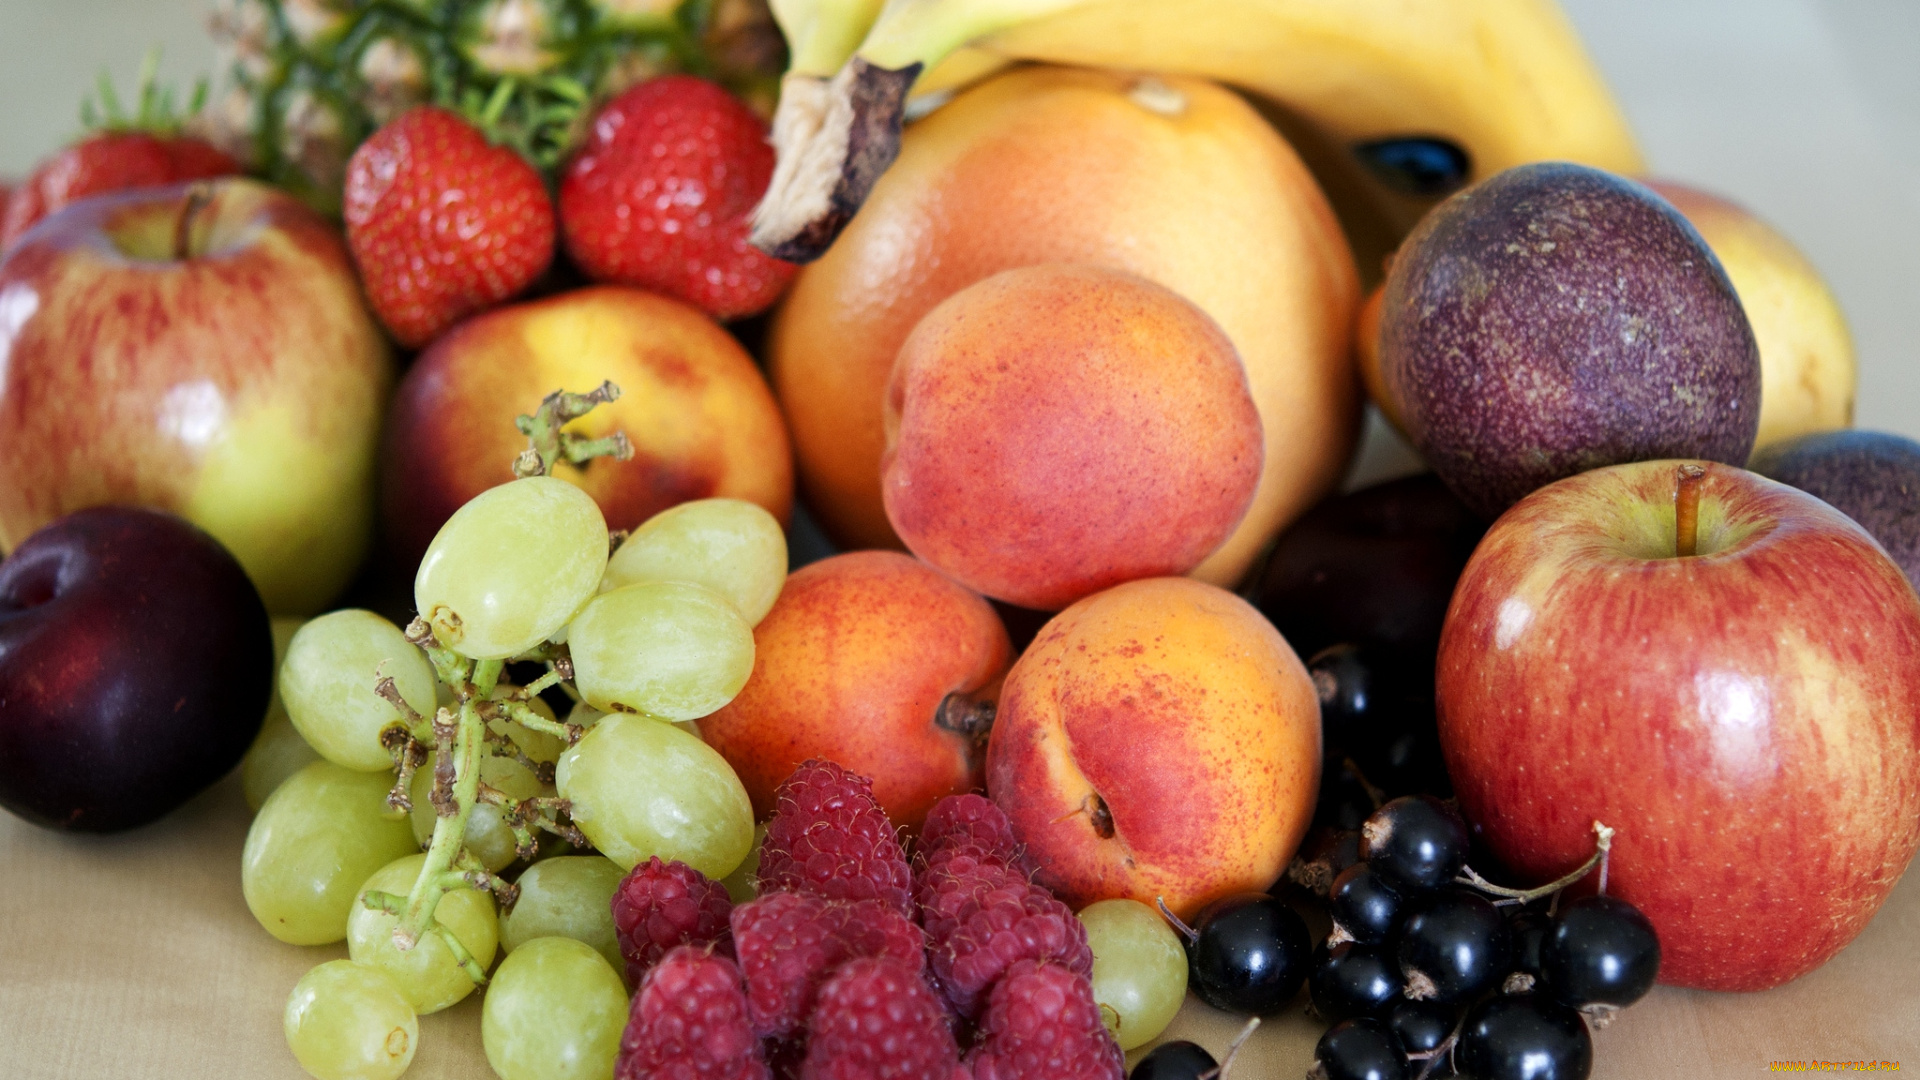 еда, фрукты, ягоды, малина, смородина, абрикосы, яблоко, сливы, виноград